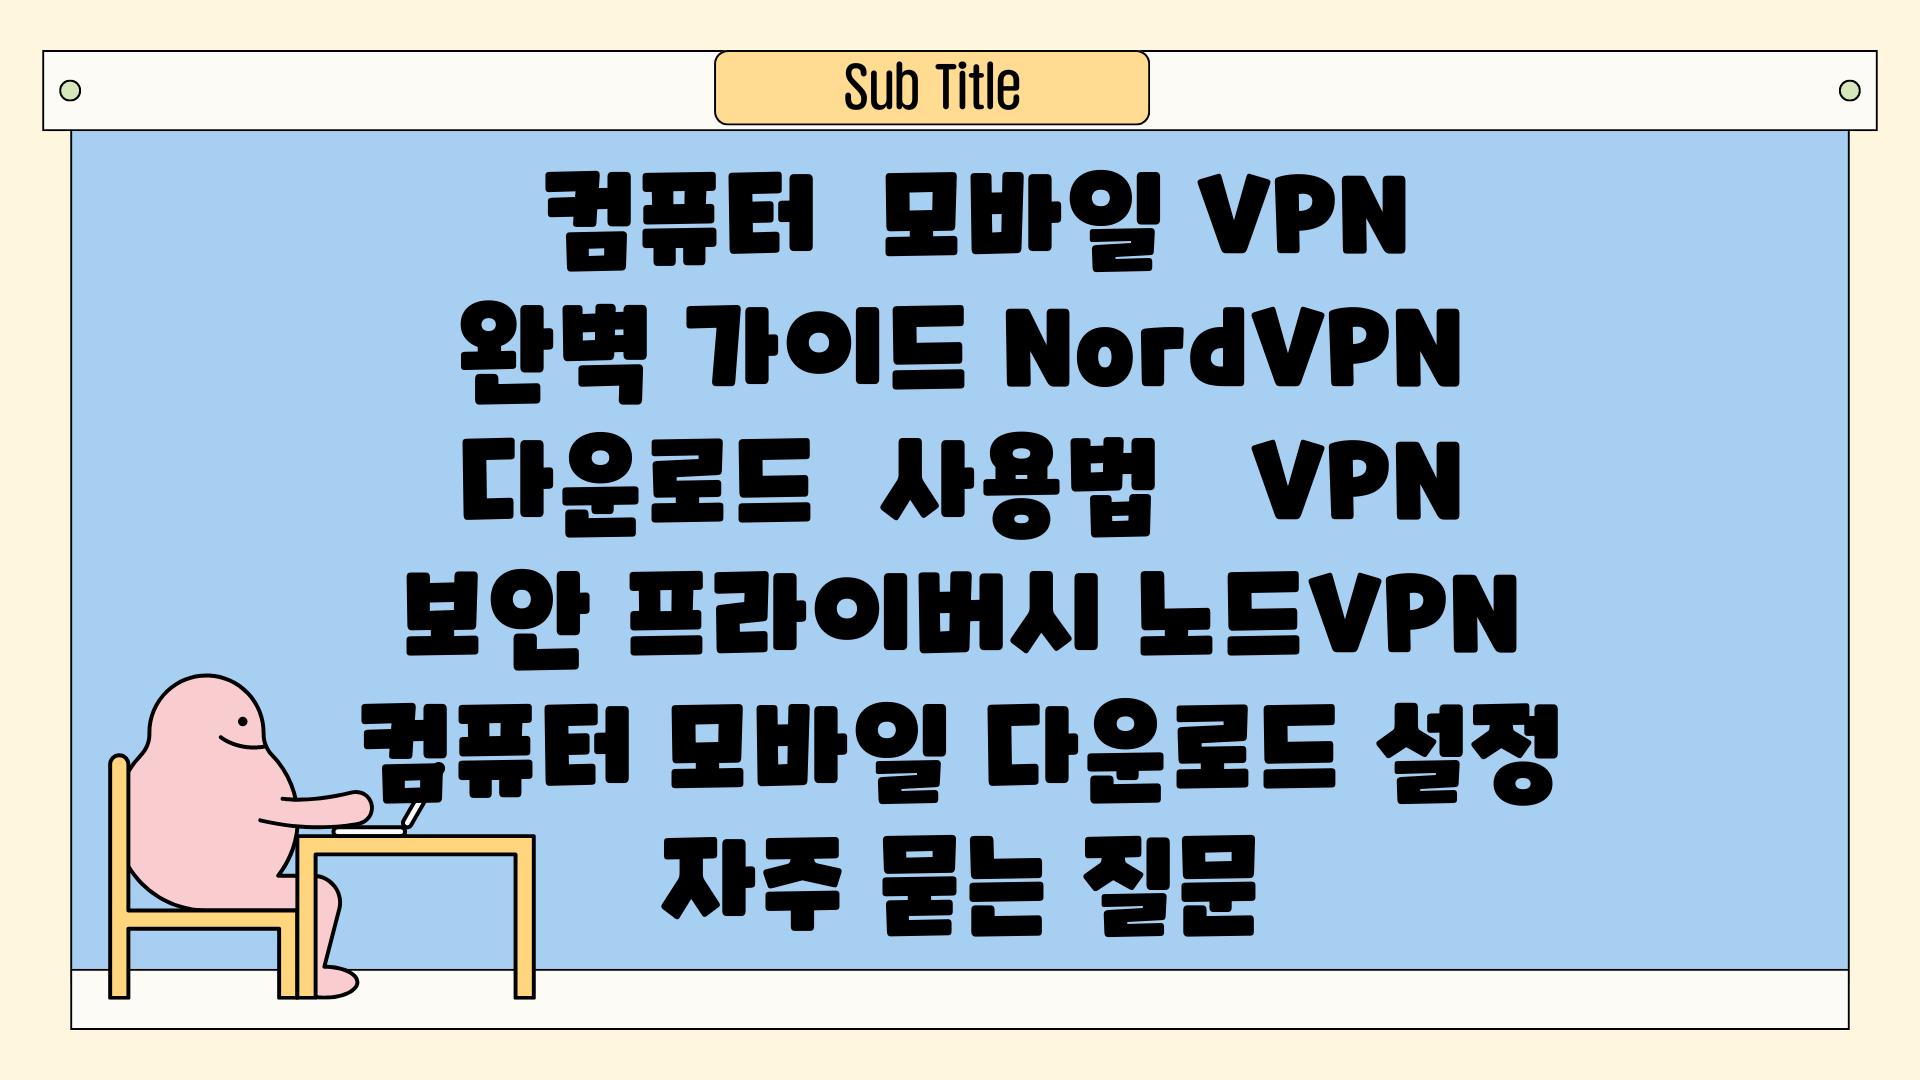  컴퓨터  모바일 VPN 완벽 가이드 NordVPN 다운로드  사용법   VPN 보안 프라이버시 노드VPN 컴퓨터 모바일 다운로드 설정 자주 묻는 질문